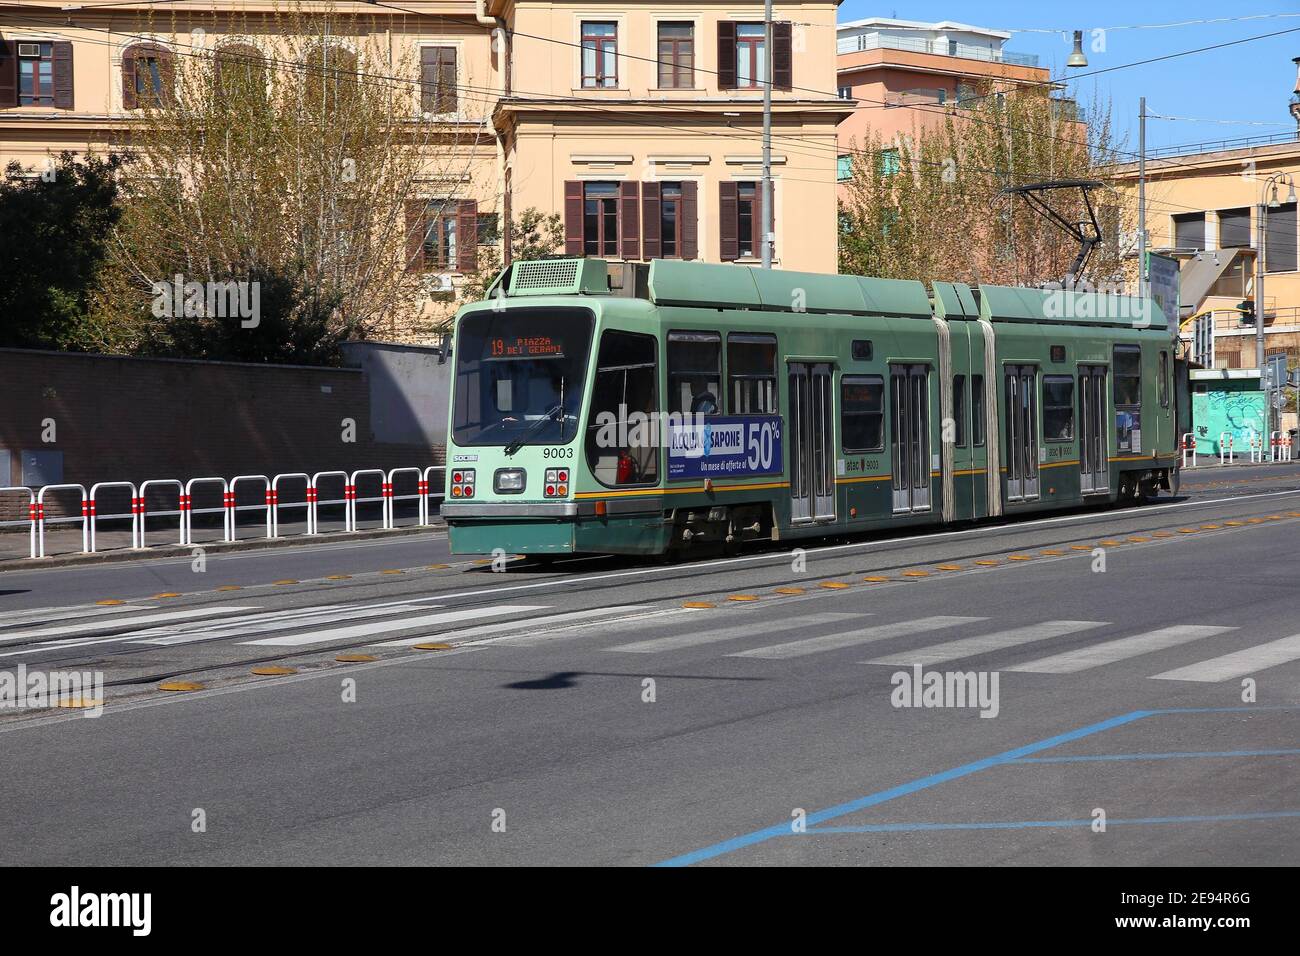 ROMA, ITALIA - 9 APRILE 2012: La gente guida il tram ATAC a Roma, Italia. Nel 2009 ATAC ha fornito più di 1.1 miliardi di corse in tram, metropolitana e autobus. Foto Stock